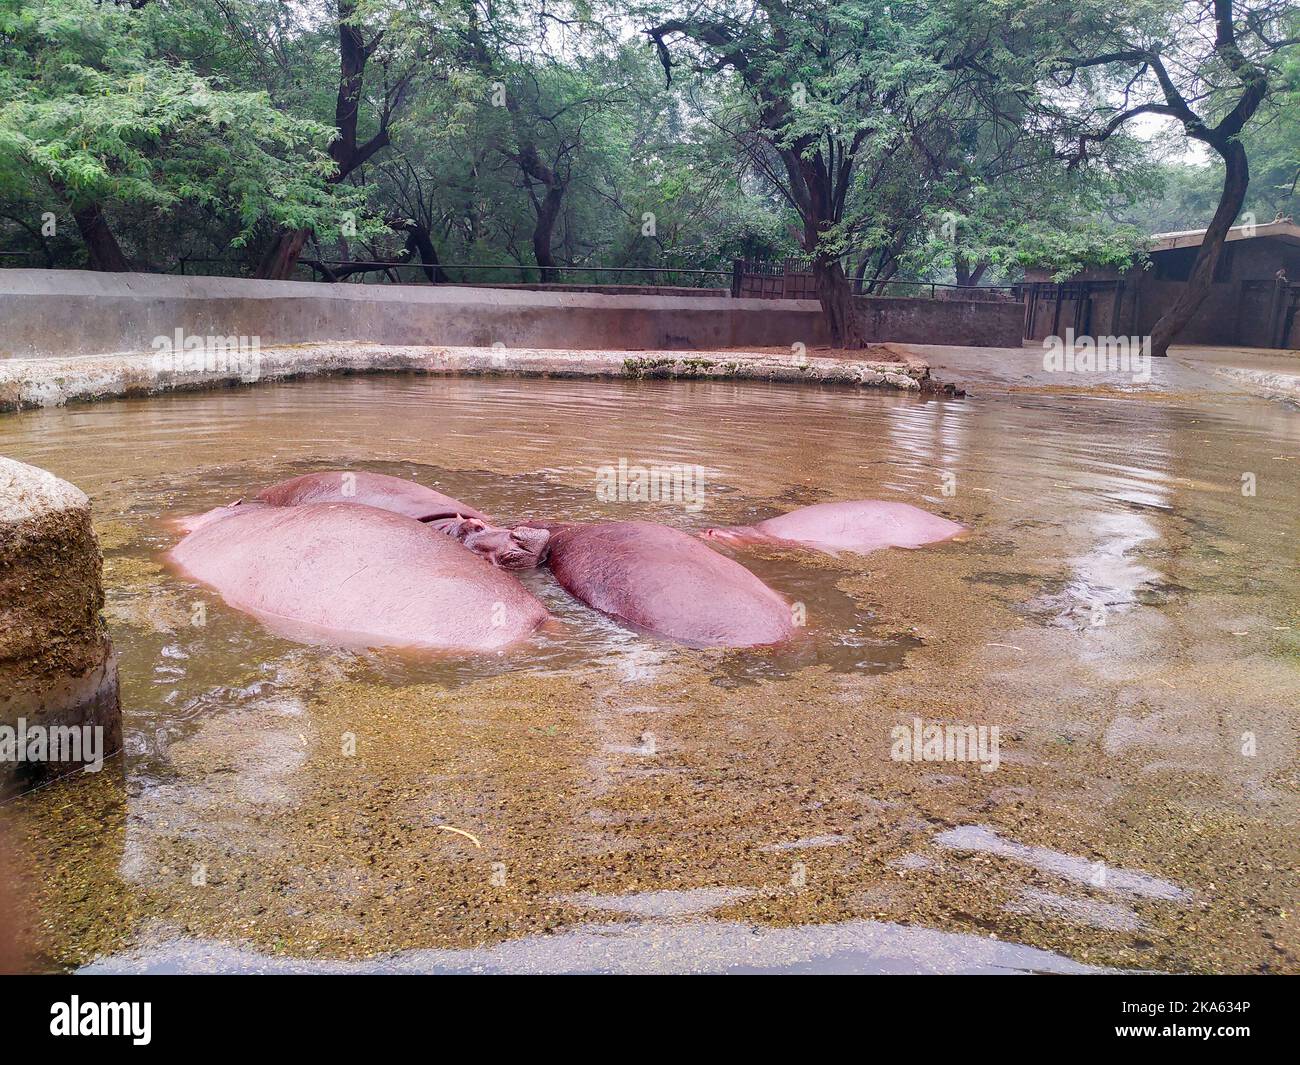 November 2nd 2019 New Delhi India. hippopotamus, also called the hippo, inside water pond at new Delhi Zoo. Stock Photo